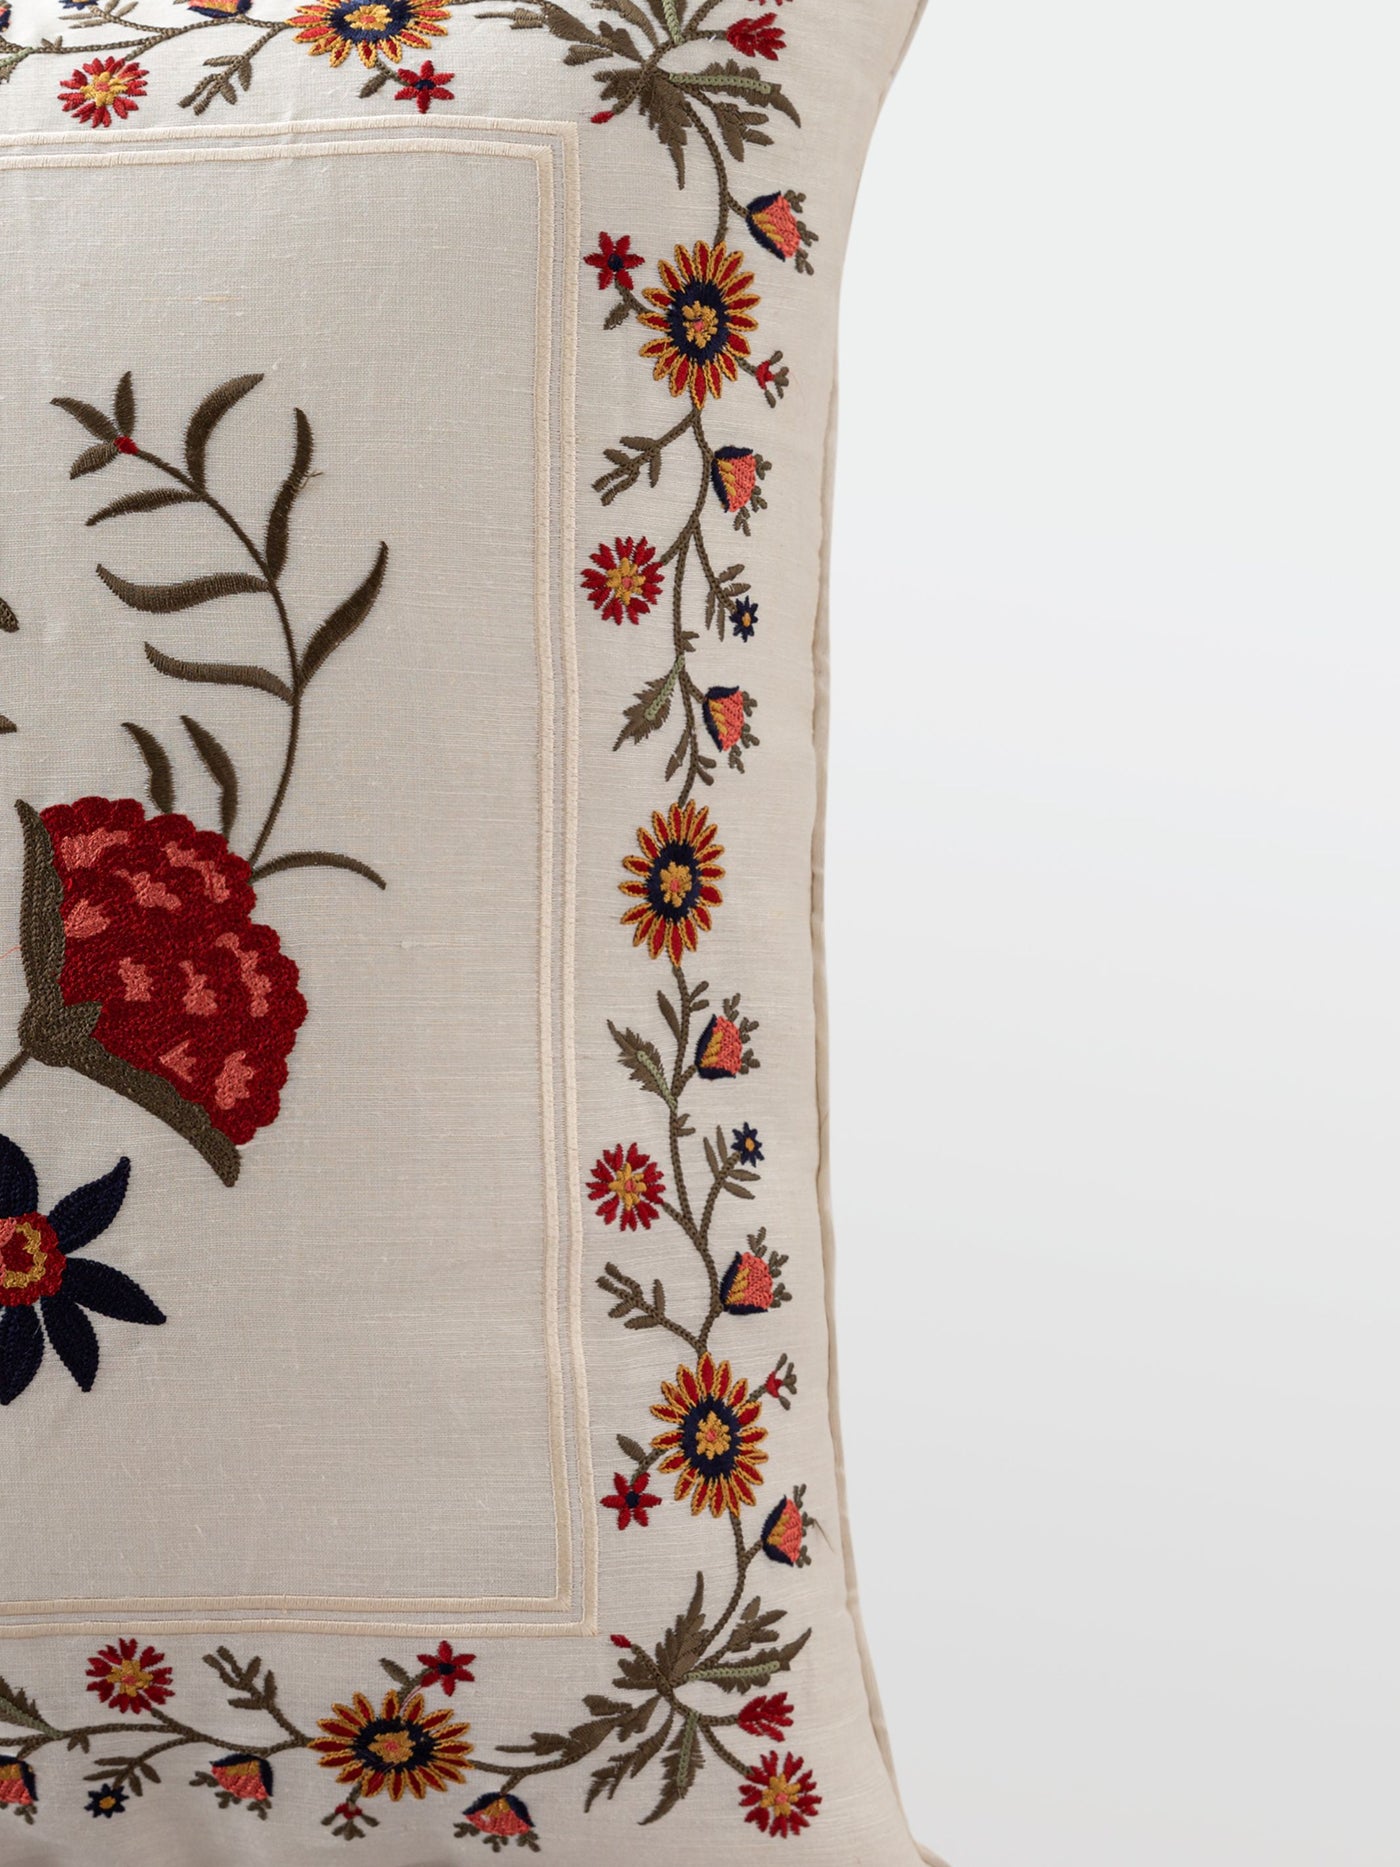 Cushion Cover - Faiza White Embroidered